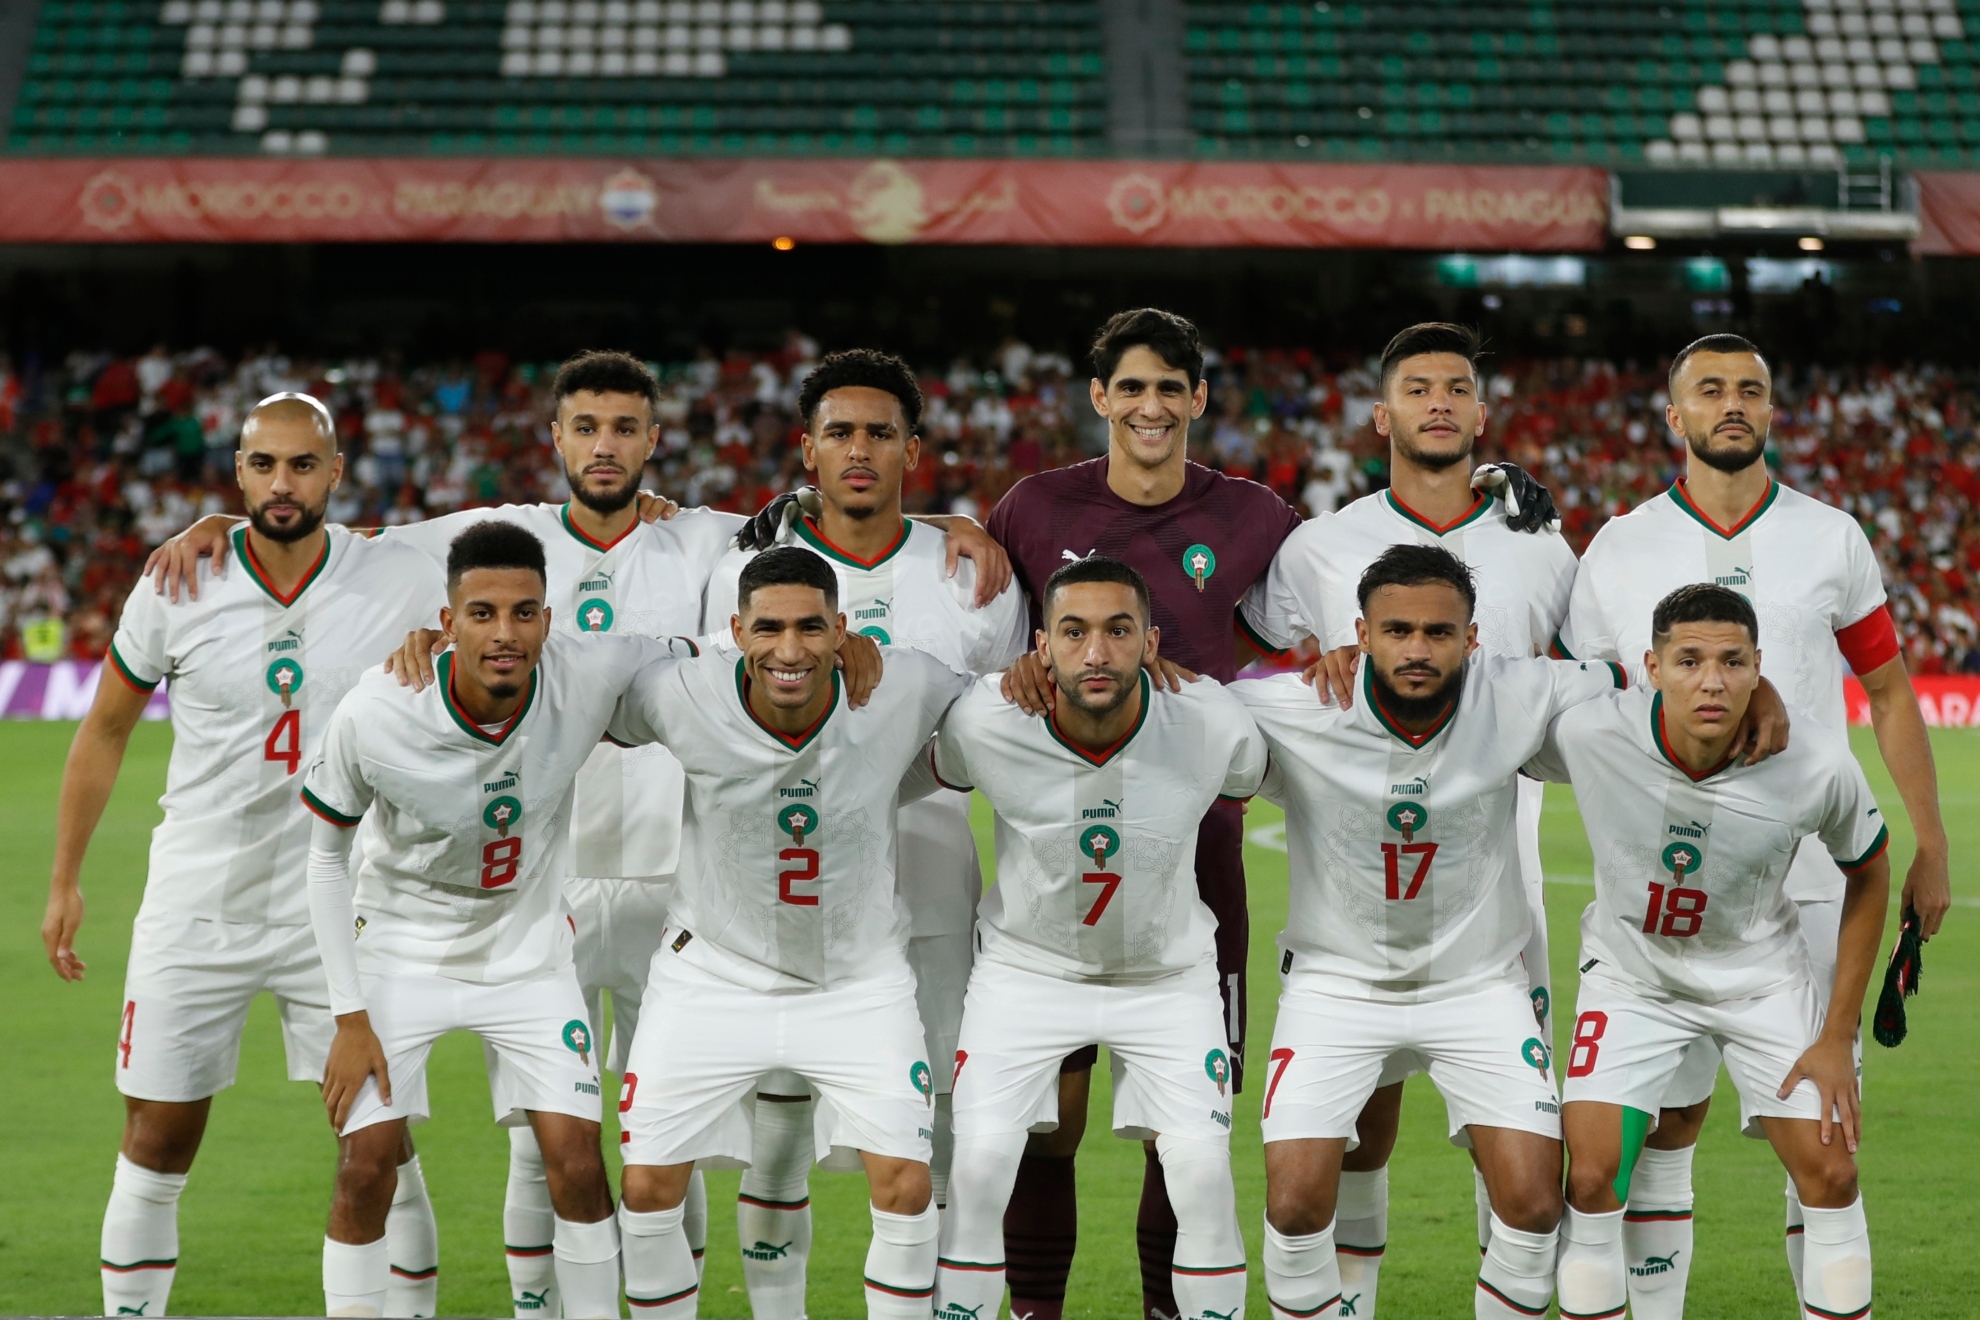 Jugadores de selección de fútbol de marruecos